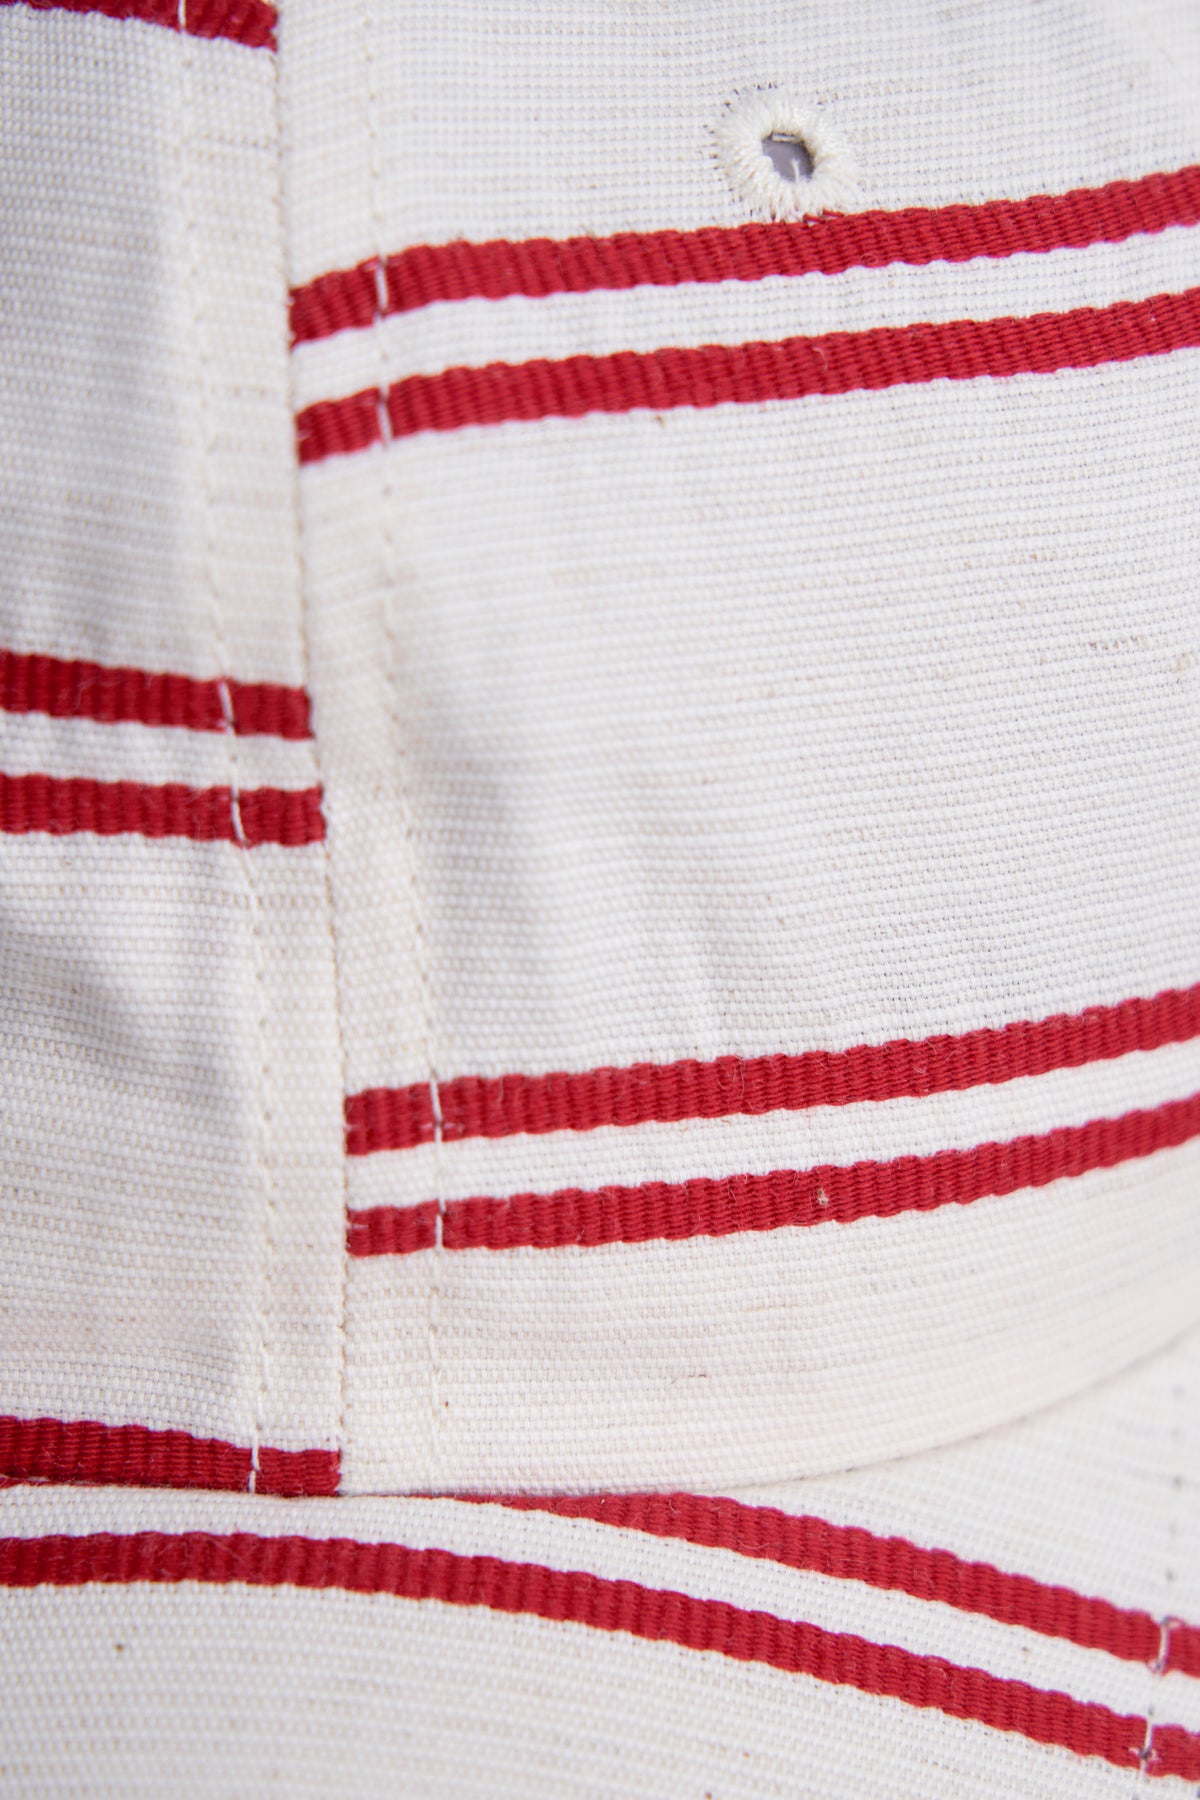 6-Panel Cap - Japanese Linen - BALLPARK RED STRIPE